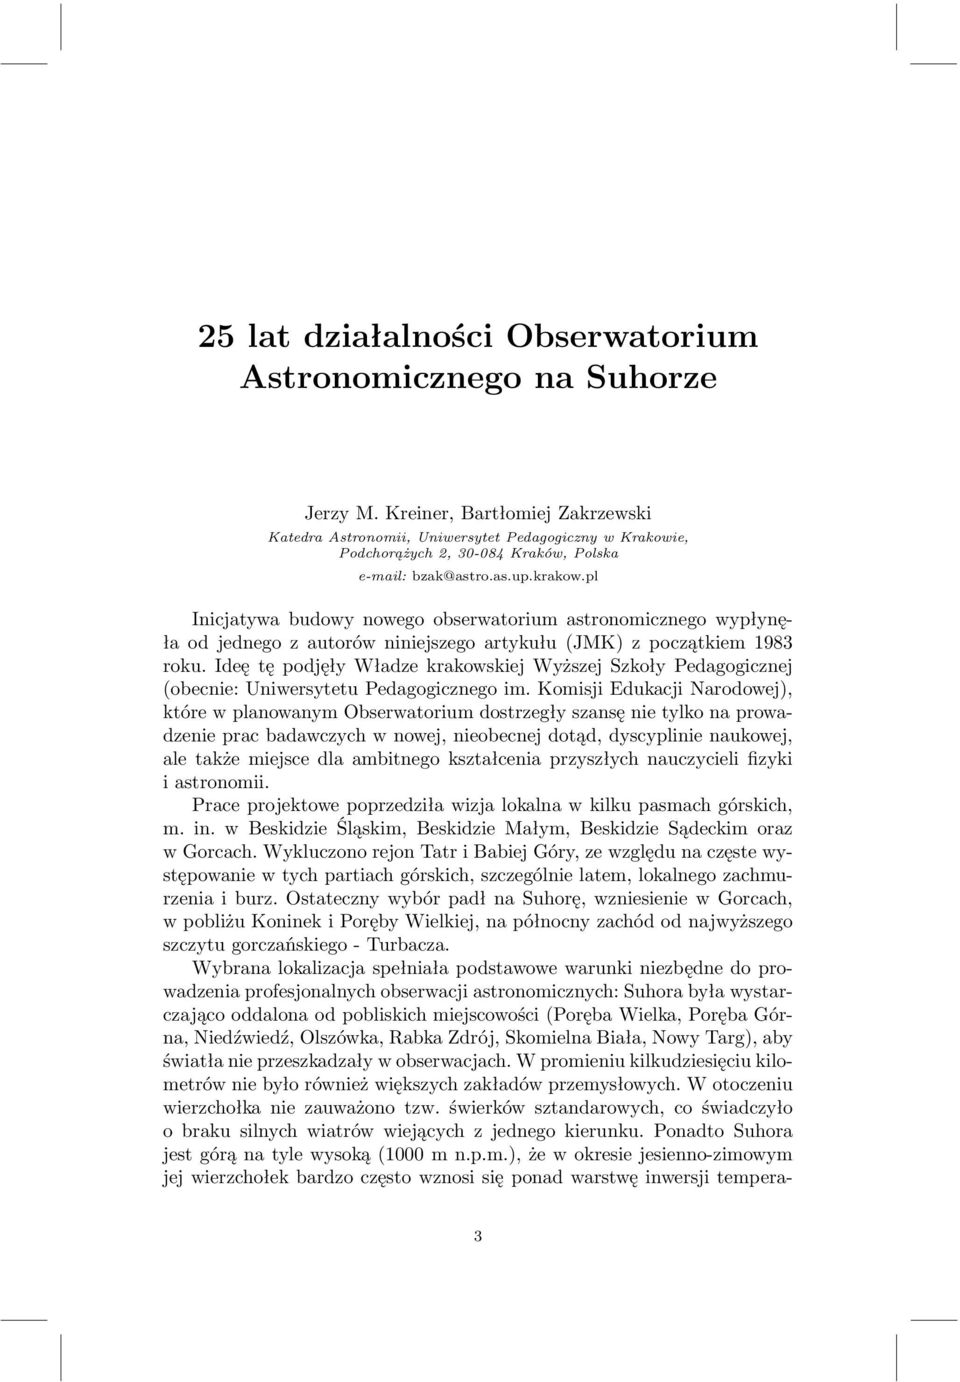 pl Inicjatywa budowy nowego obserwatorium astronomicznego wypłynęła od jednego z autorów niniejszego artykułu (JMK) z początkiem 1983 roku.